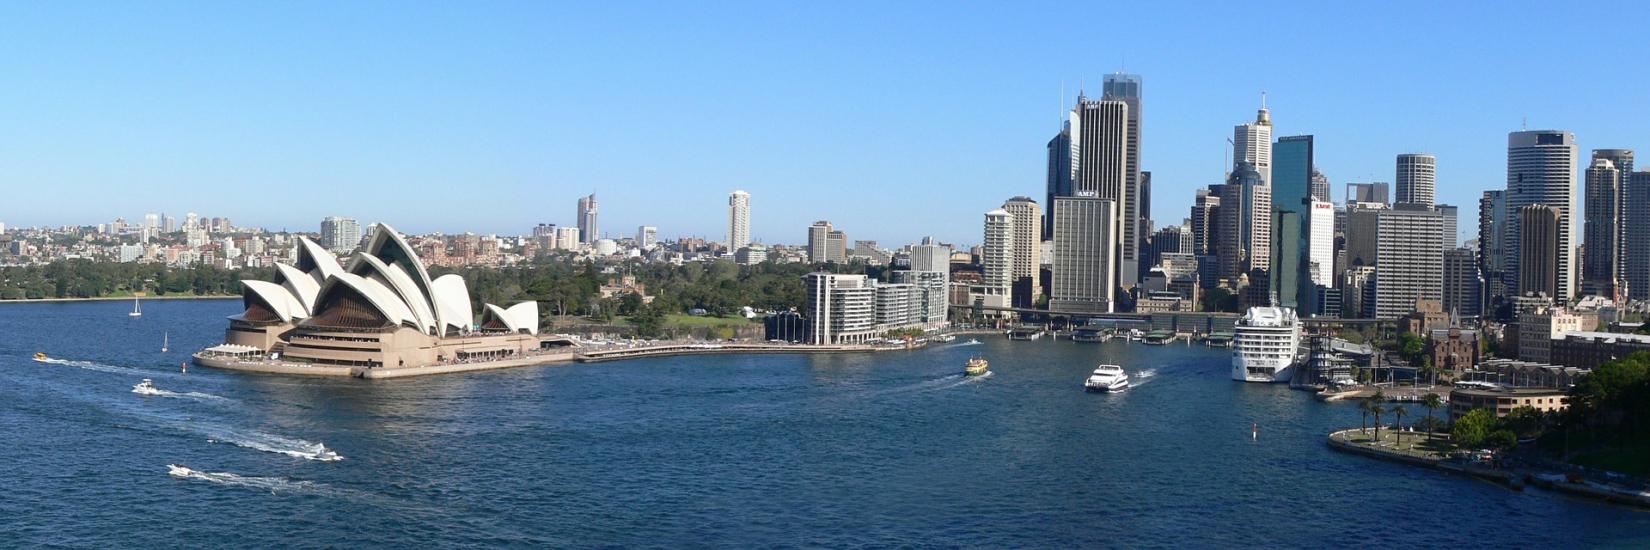 Sydney Australien, Luftaufnahme, Oper